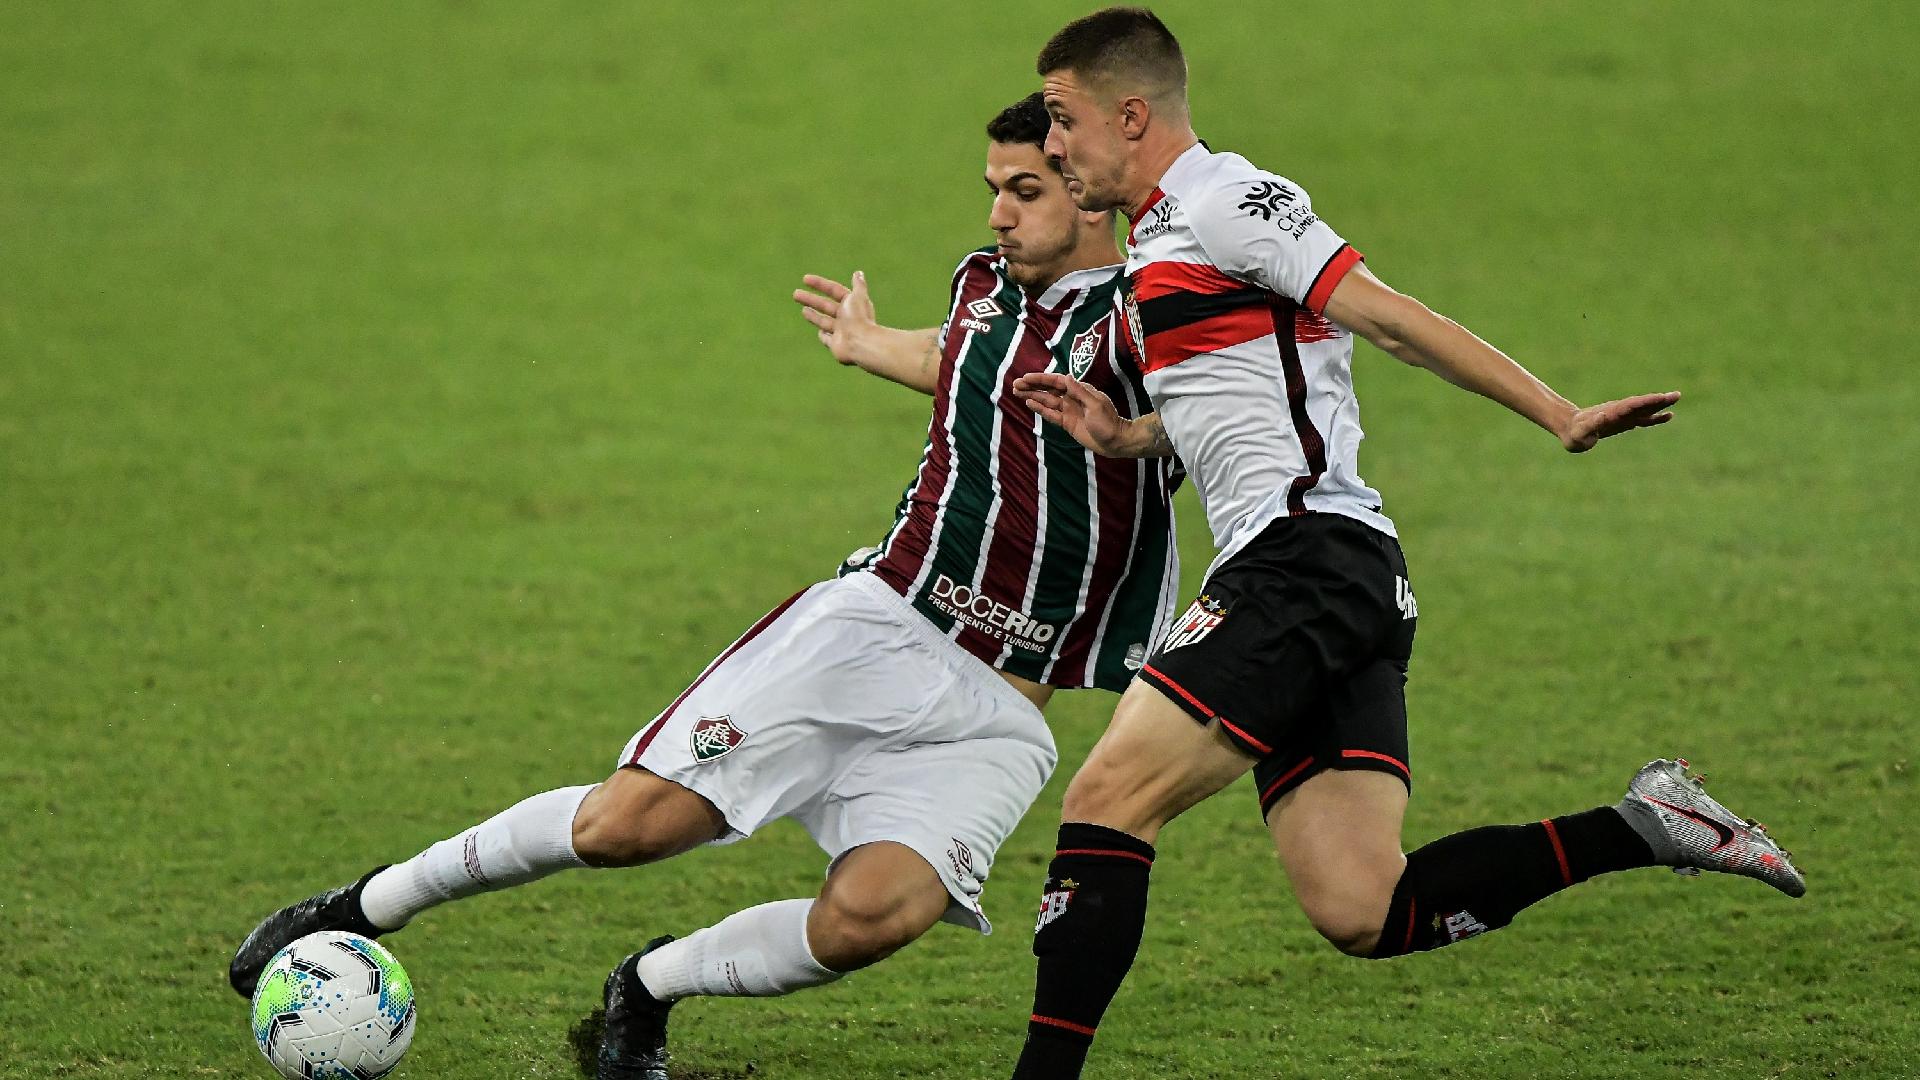 Nino, jogador do Fluminense, disputa lance com Renato Kayzer, jogador do Atletico-GO, em duelo válido pelo Brasileirão 